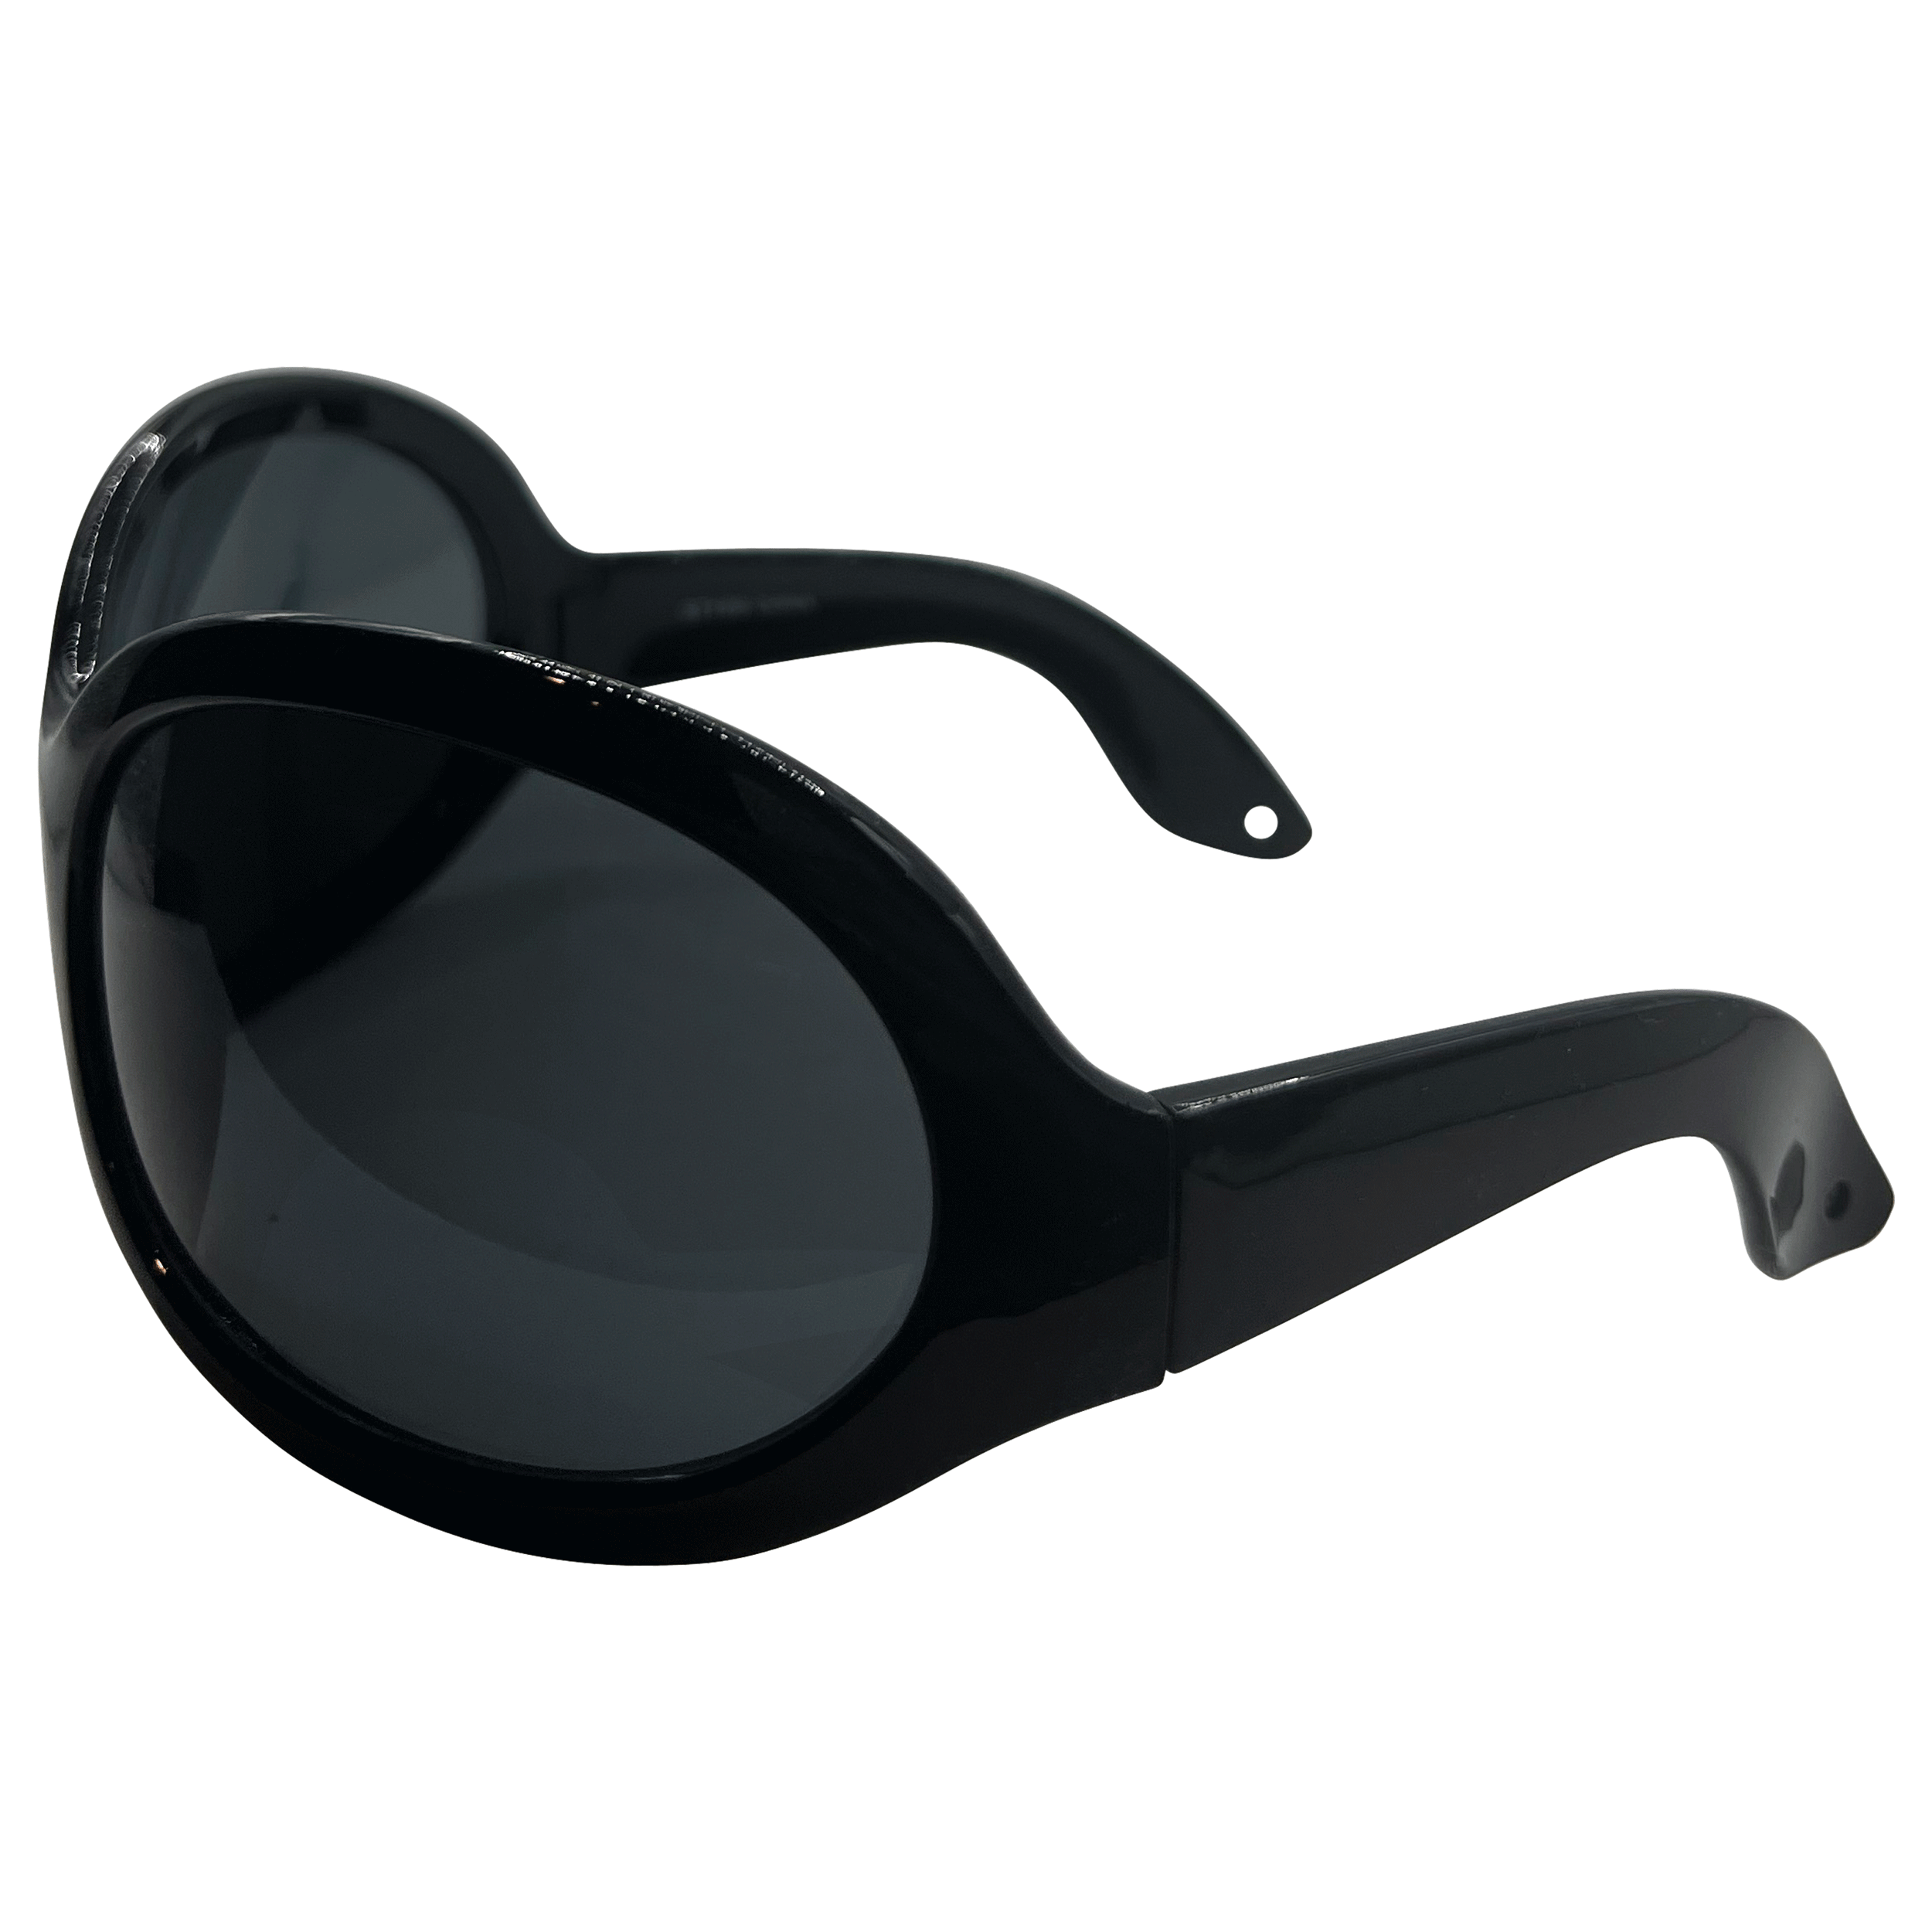 BIGGIE 90s Oversized Sunglasses